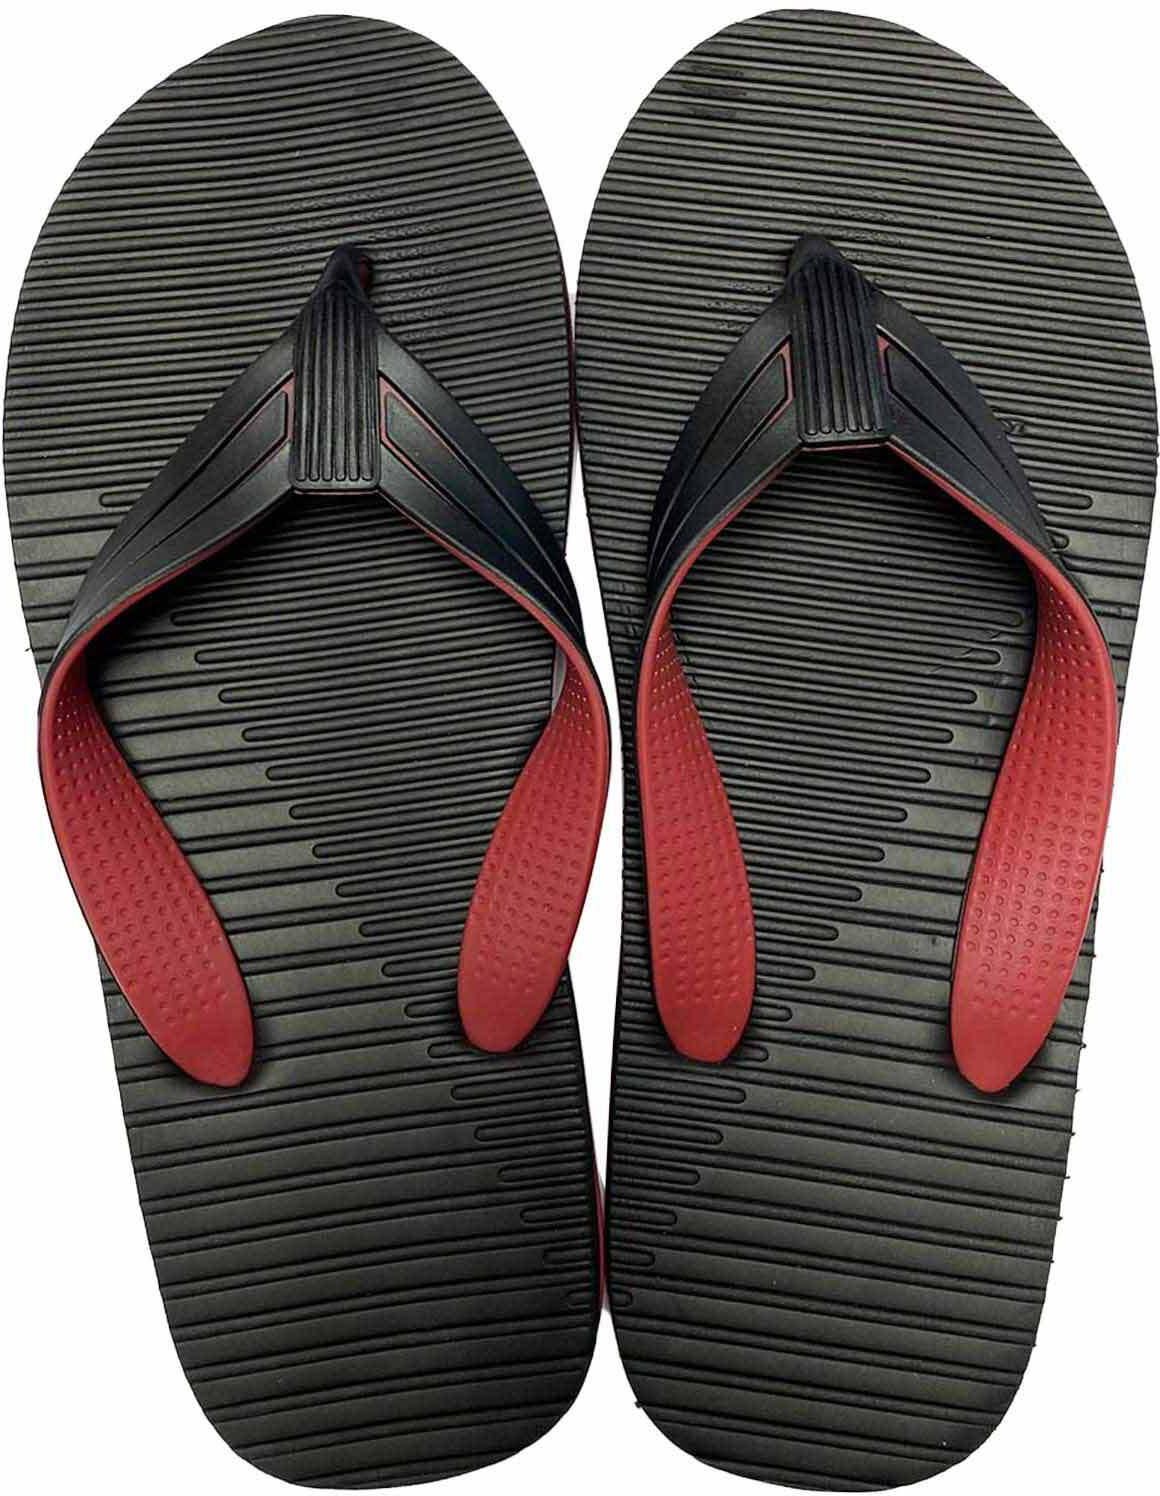 Al Nasser 371264 Slipper for Men - Black/Red - Size 39/40